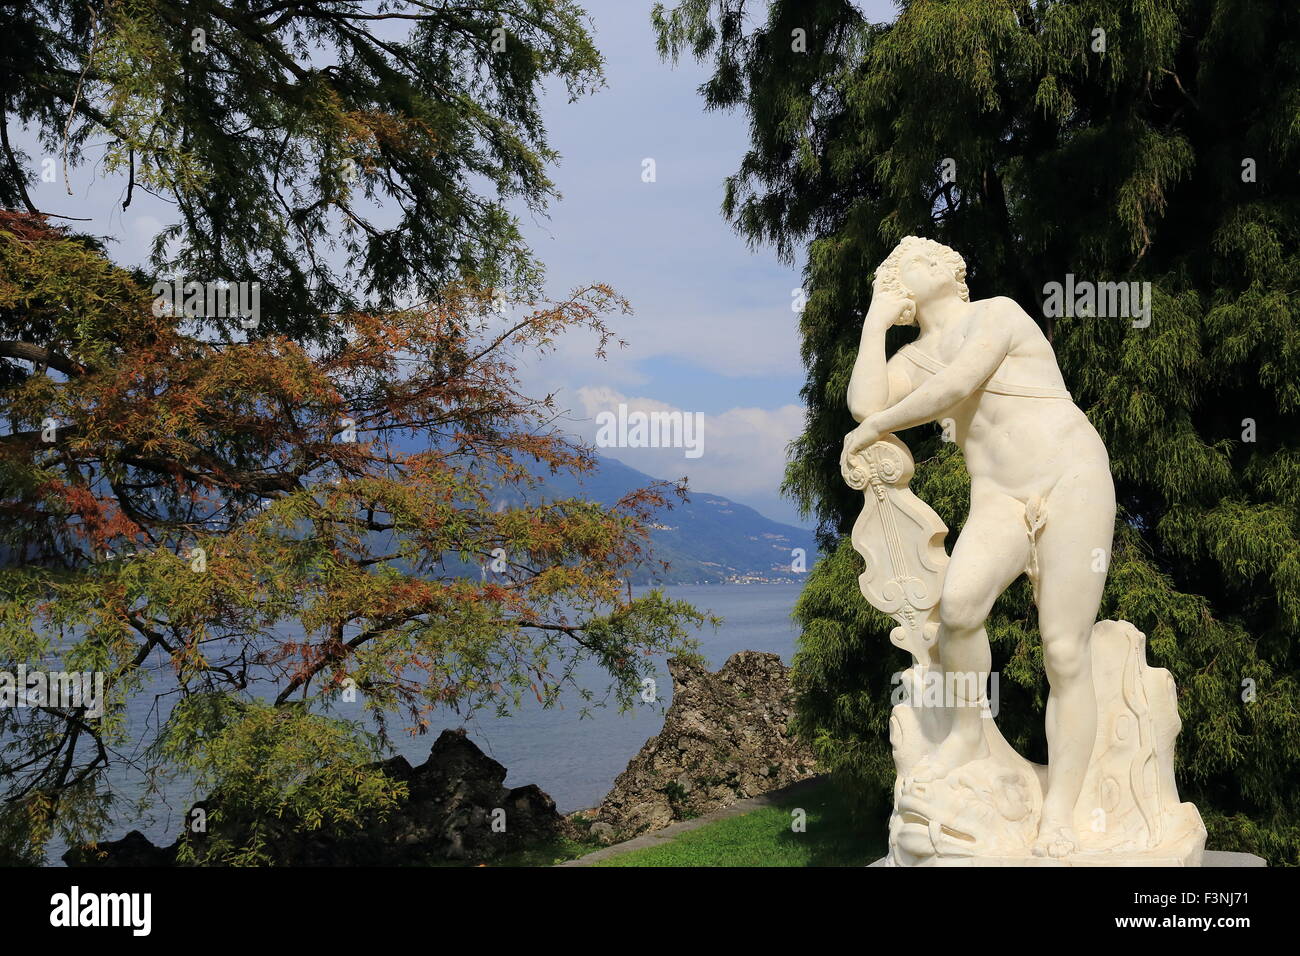 Garden of Villa Melzi, Bellagio, Lake Como, Italy Stock Photo